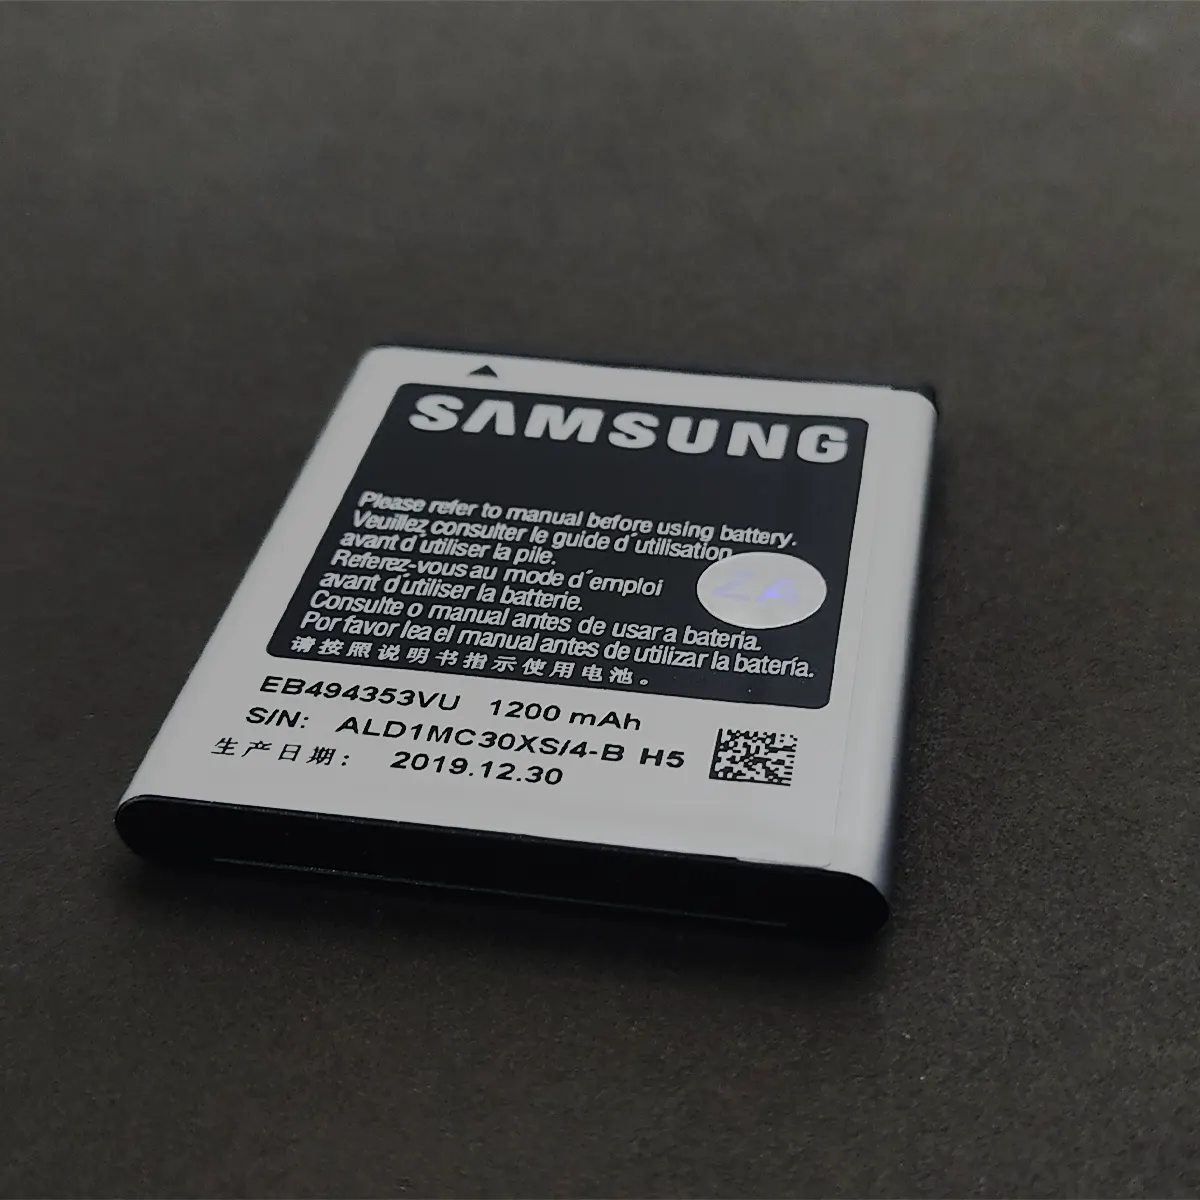 باتری اصلی Samsung Galaxy Mini S5570